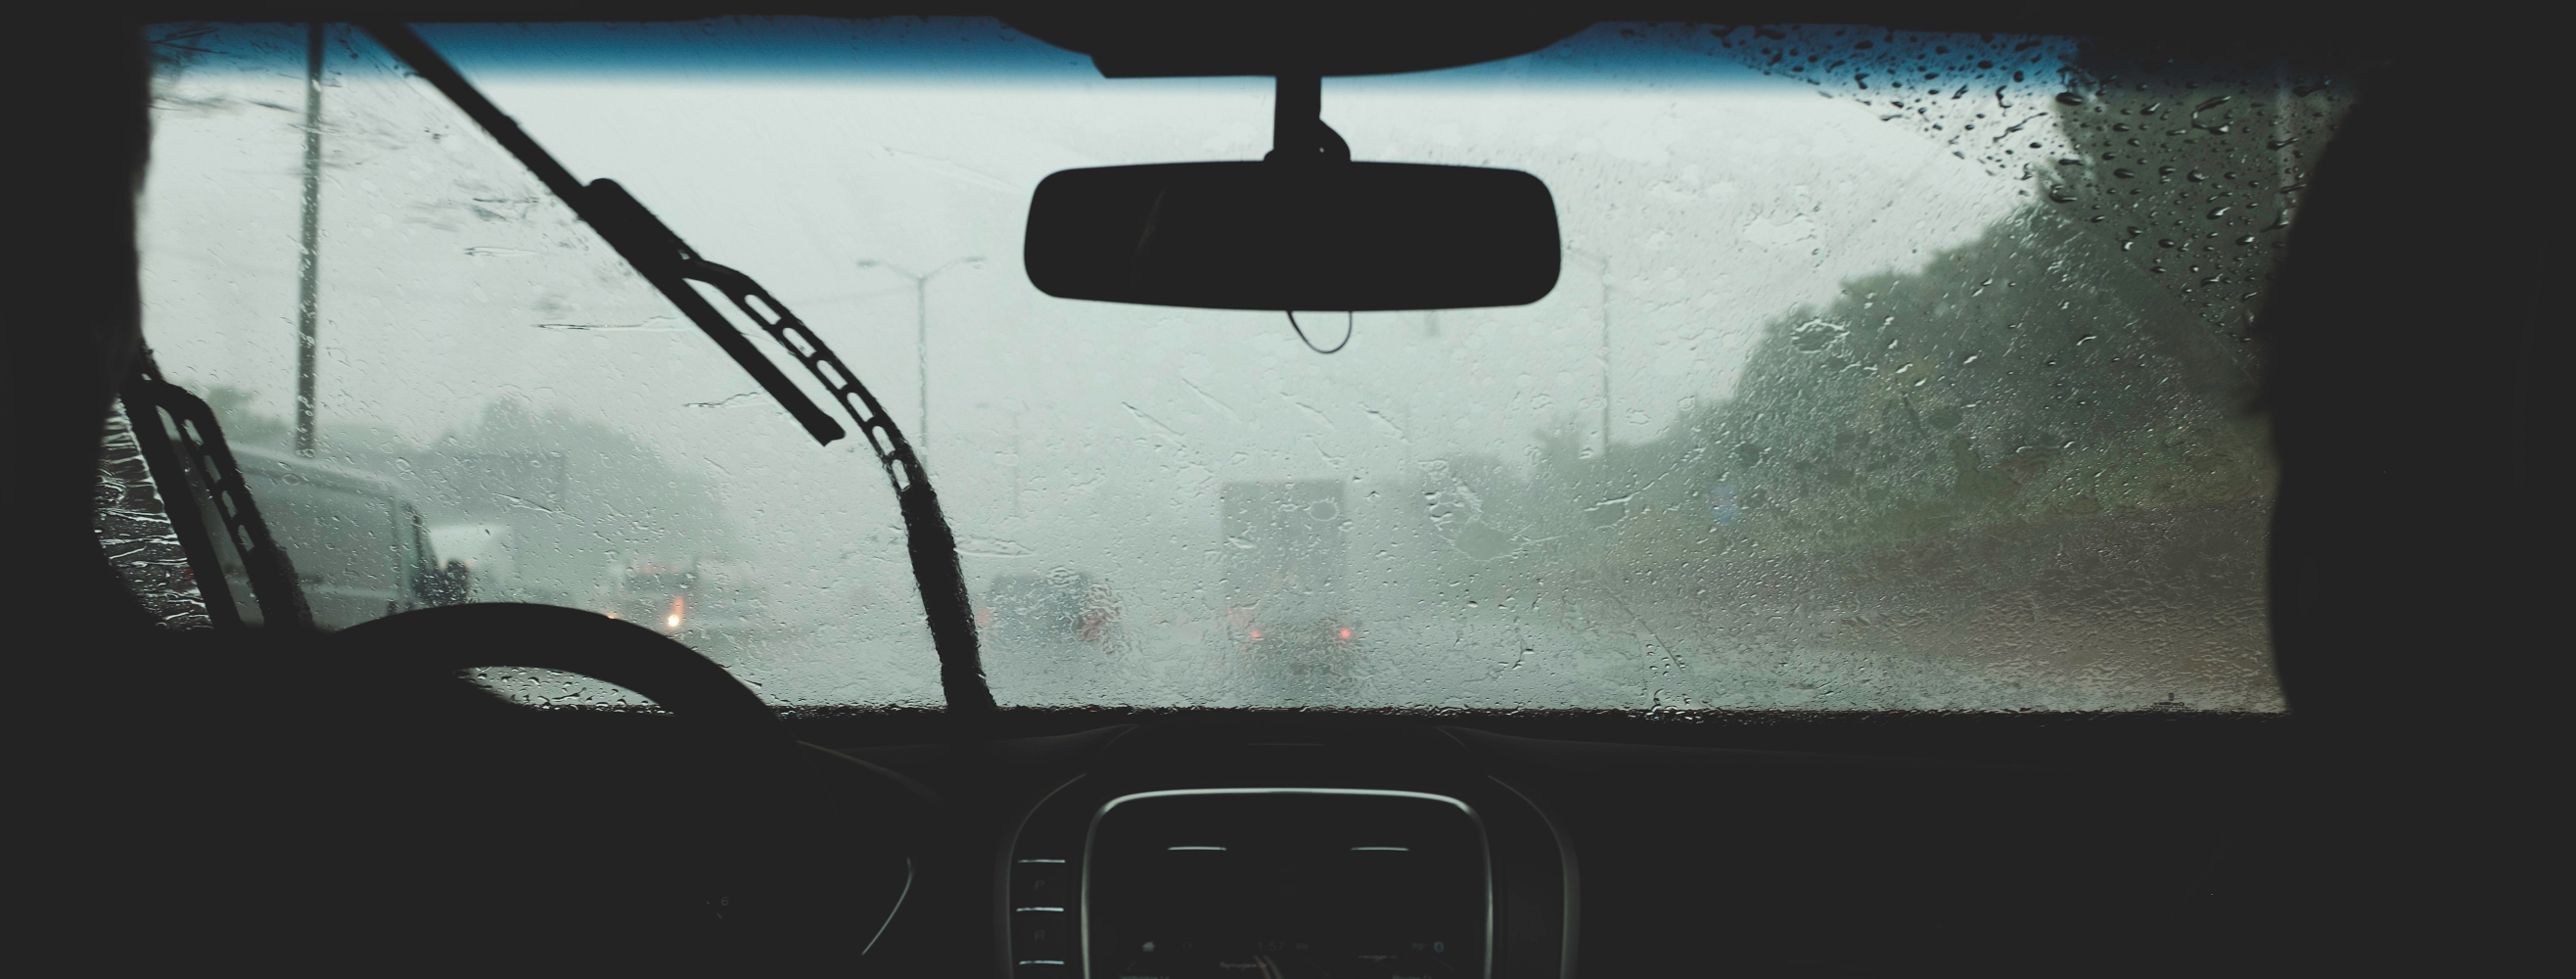 Praca wycieraczek samochodowych podczas jazdy w deszczu.